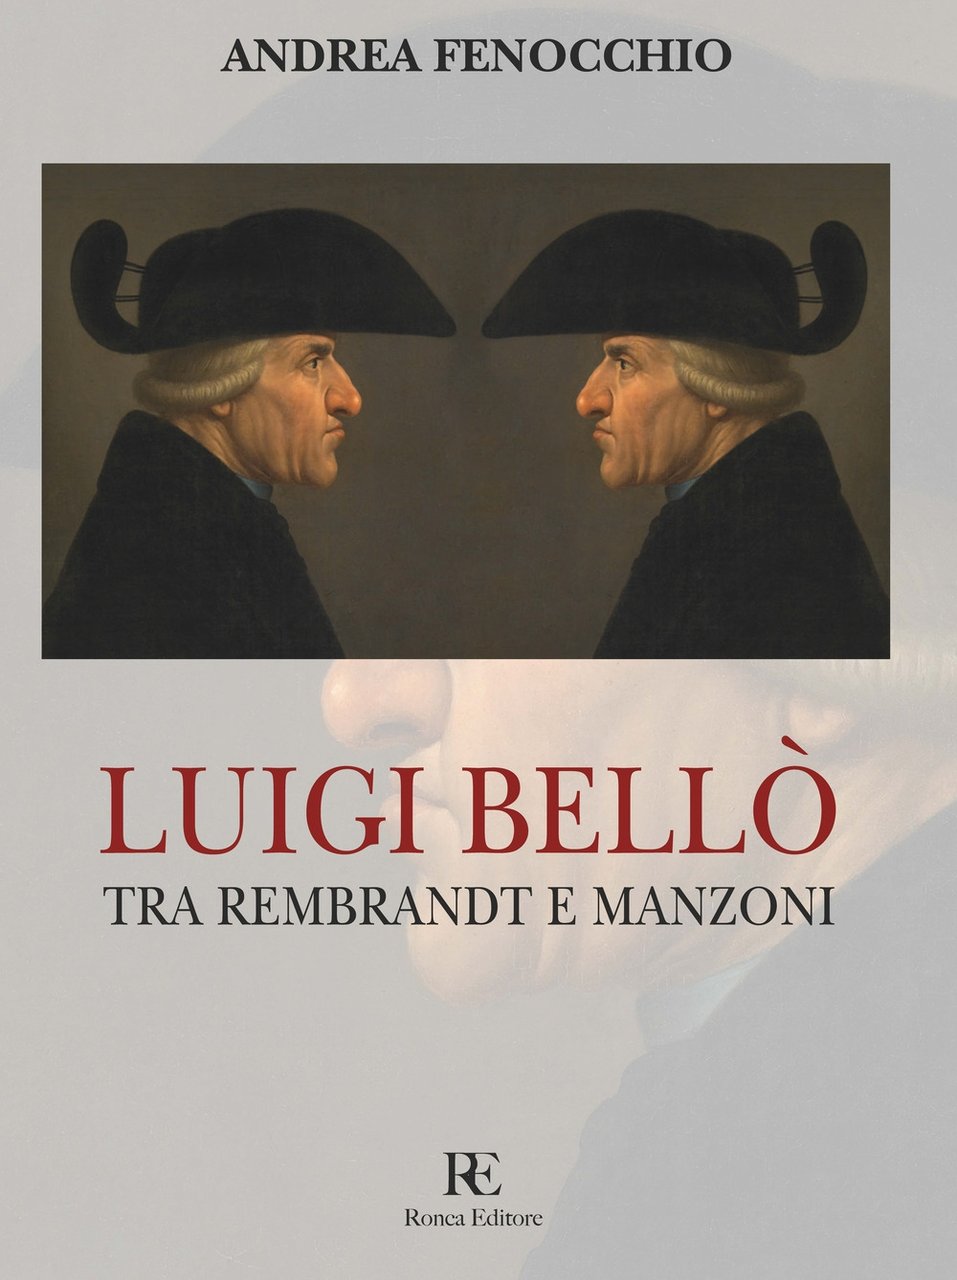 Luigi Bellò. Tra Rembrandt e Manzoni, Sospiro, Ronca Editore, 2019